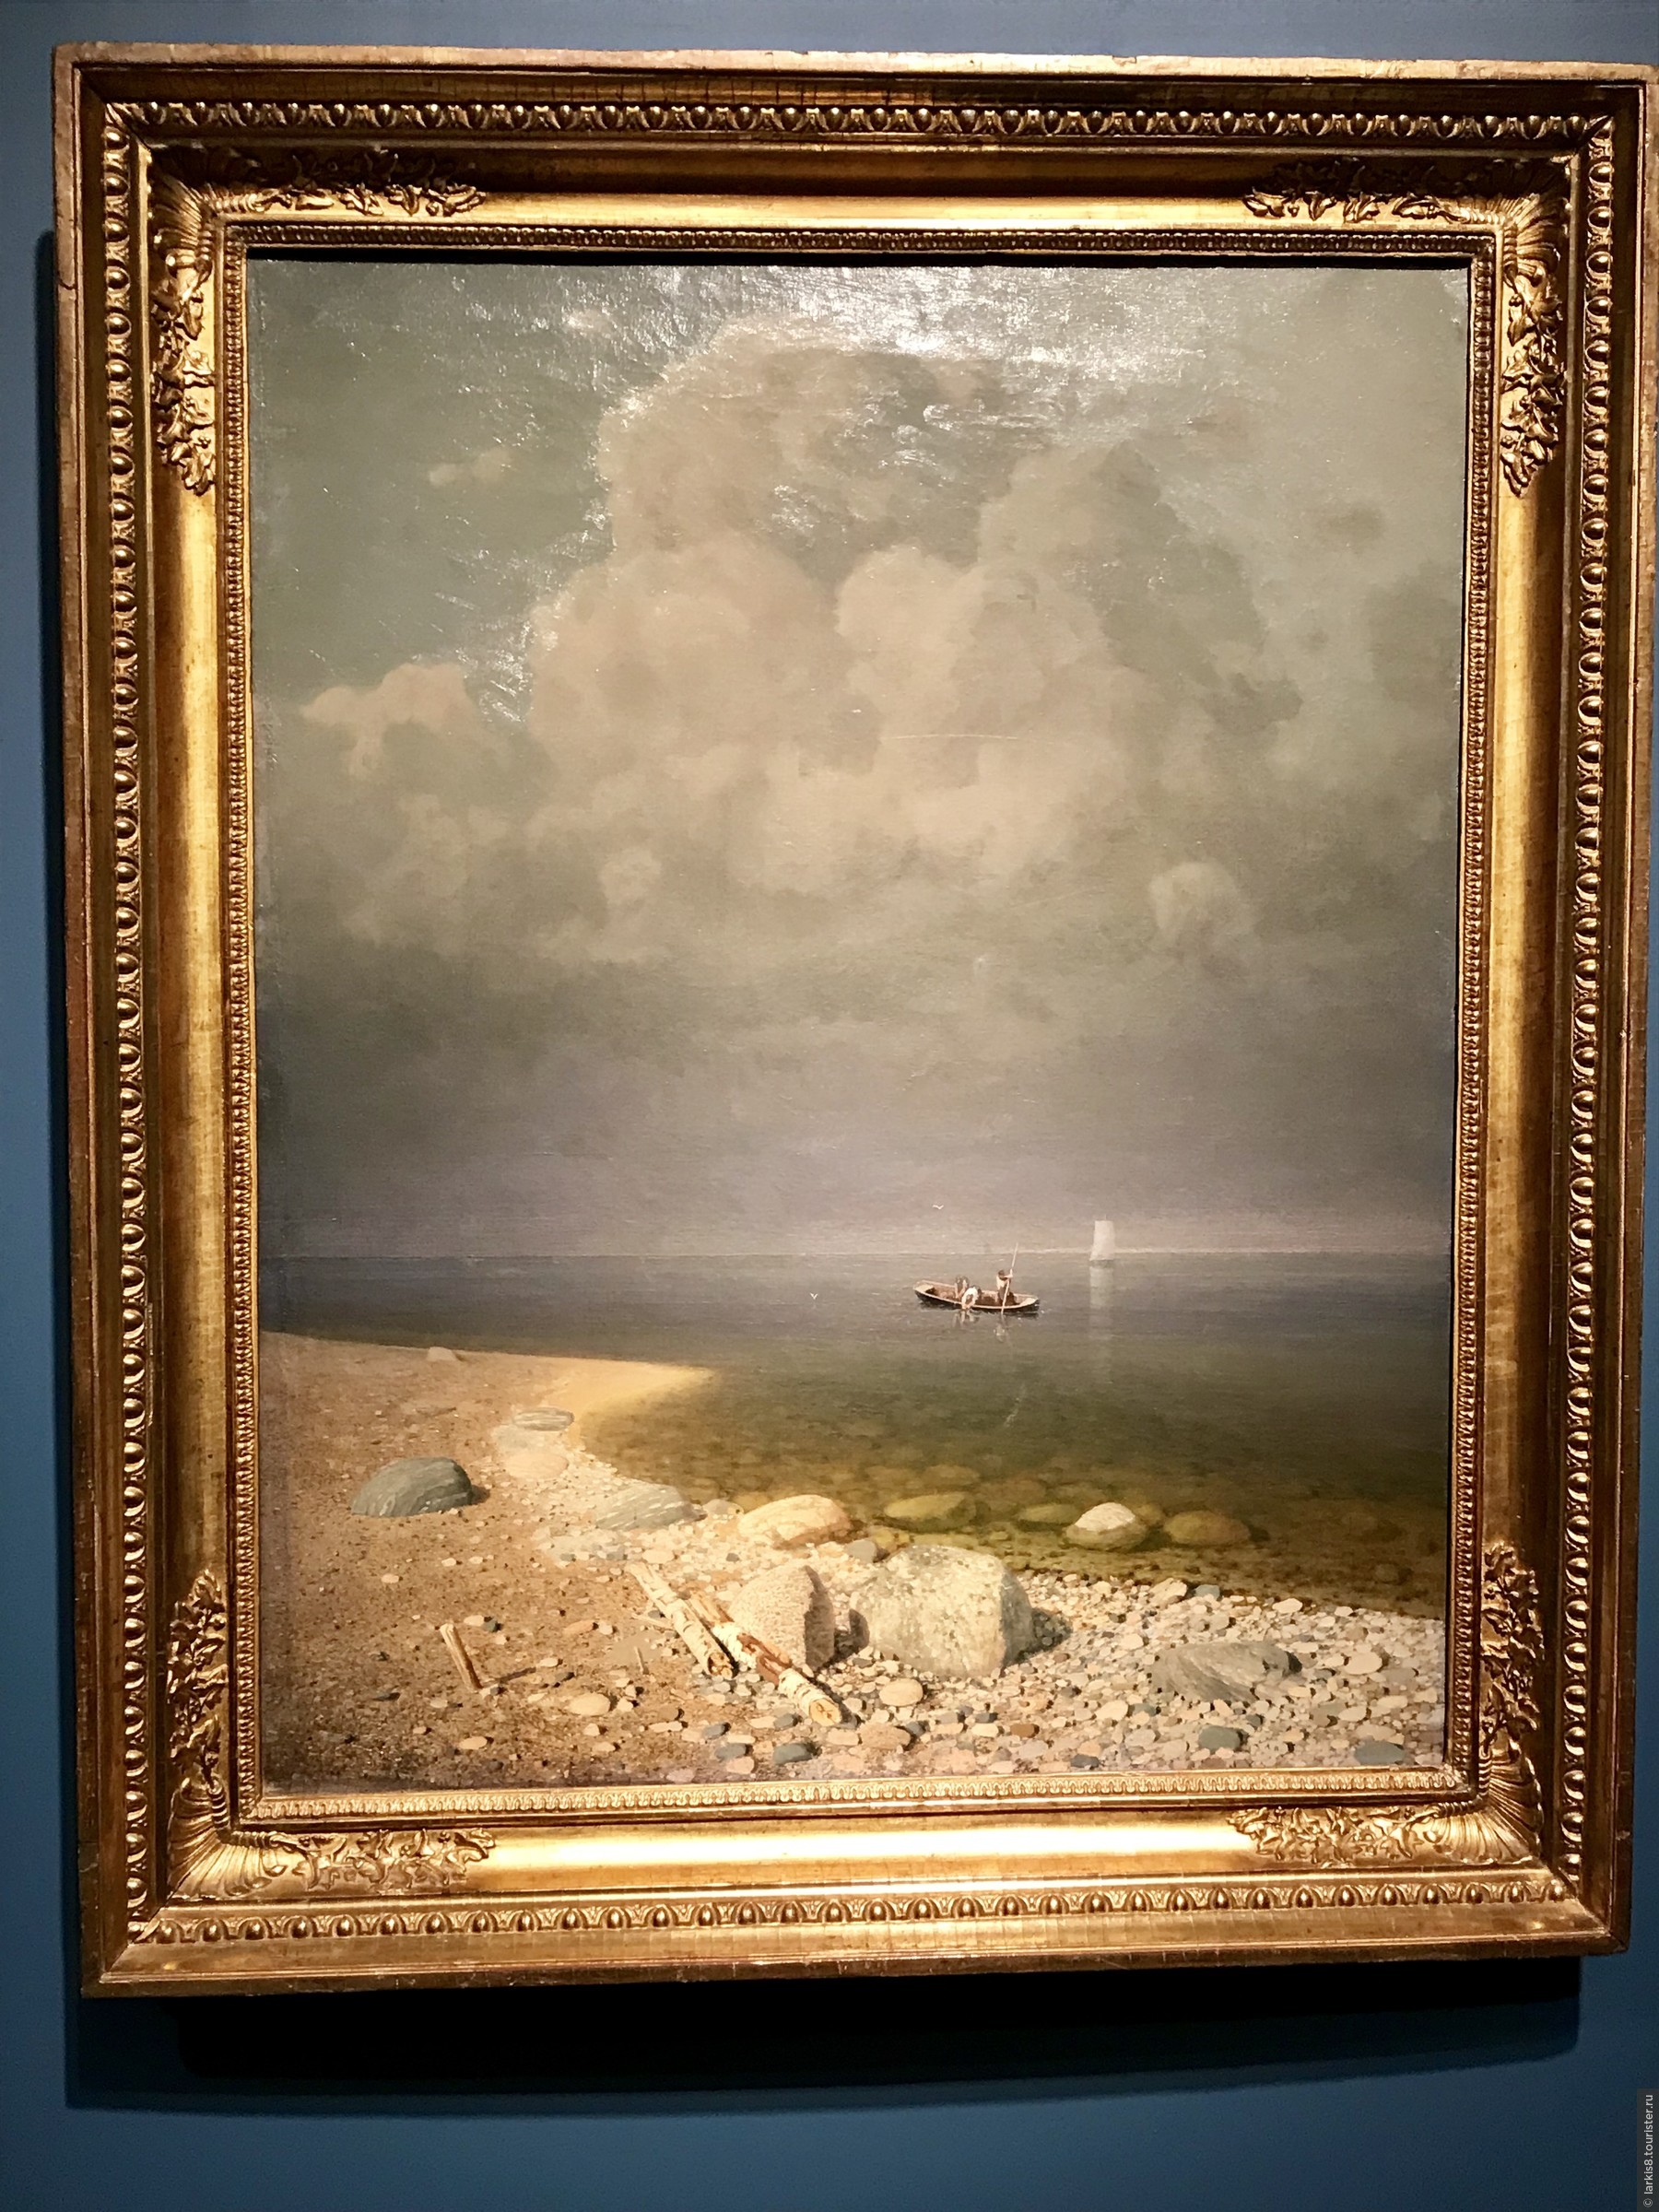 Лондонцы увидевшие на выставке картину были раздражены туман на полотне к их удивлению был розовый